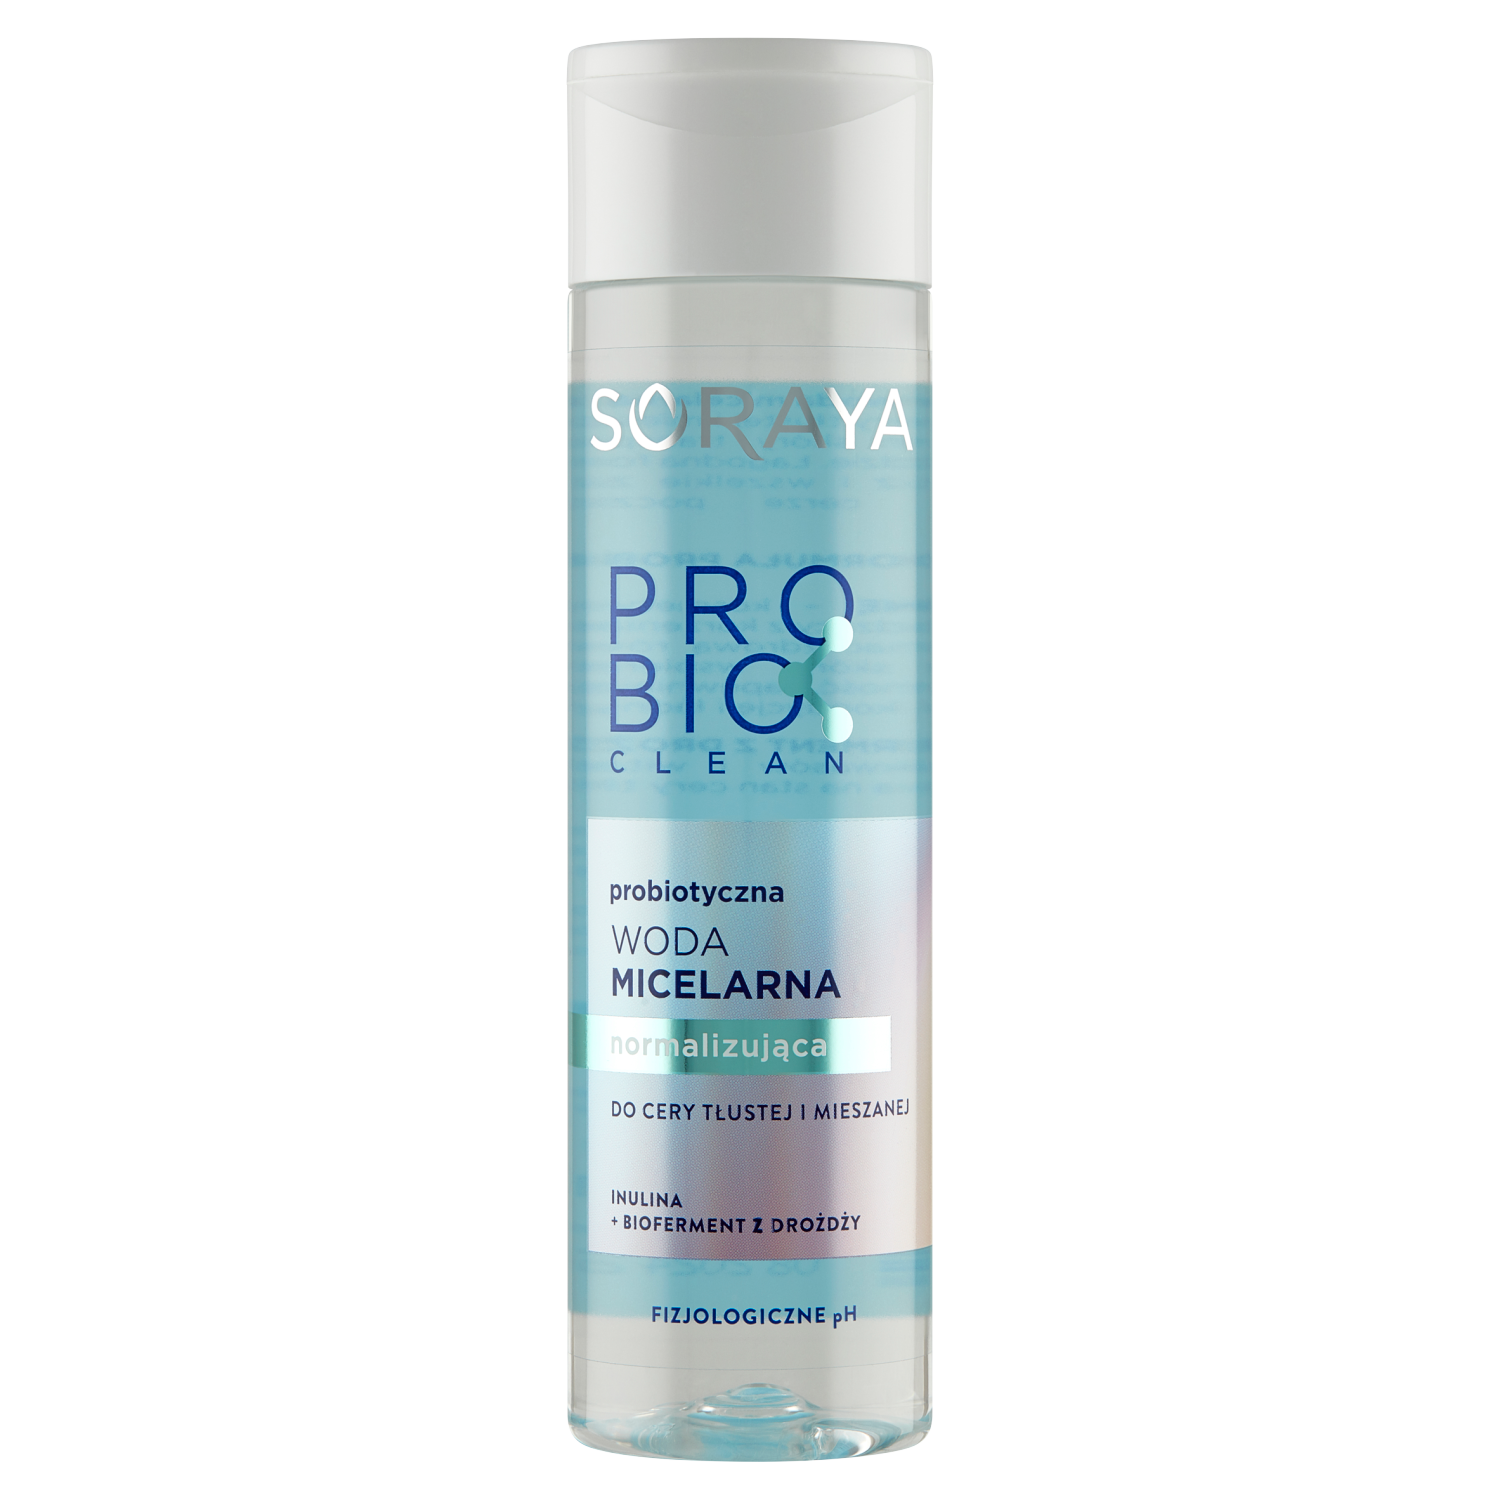 Soraya Probio Clean нормализующая мицеллярная вода для лица, 250 мл